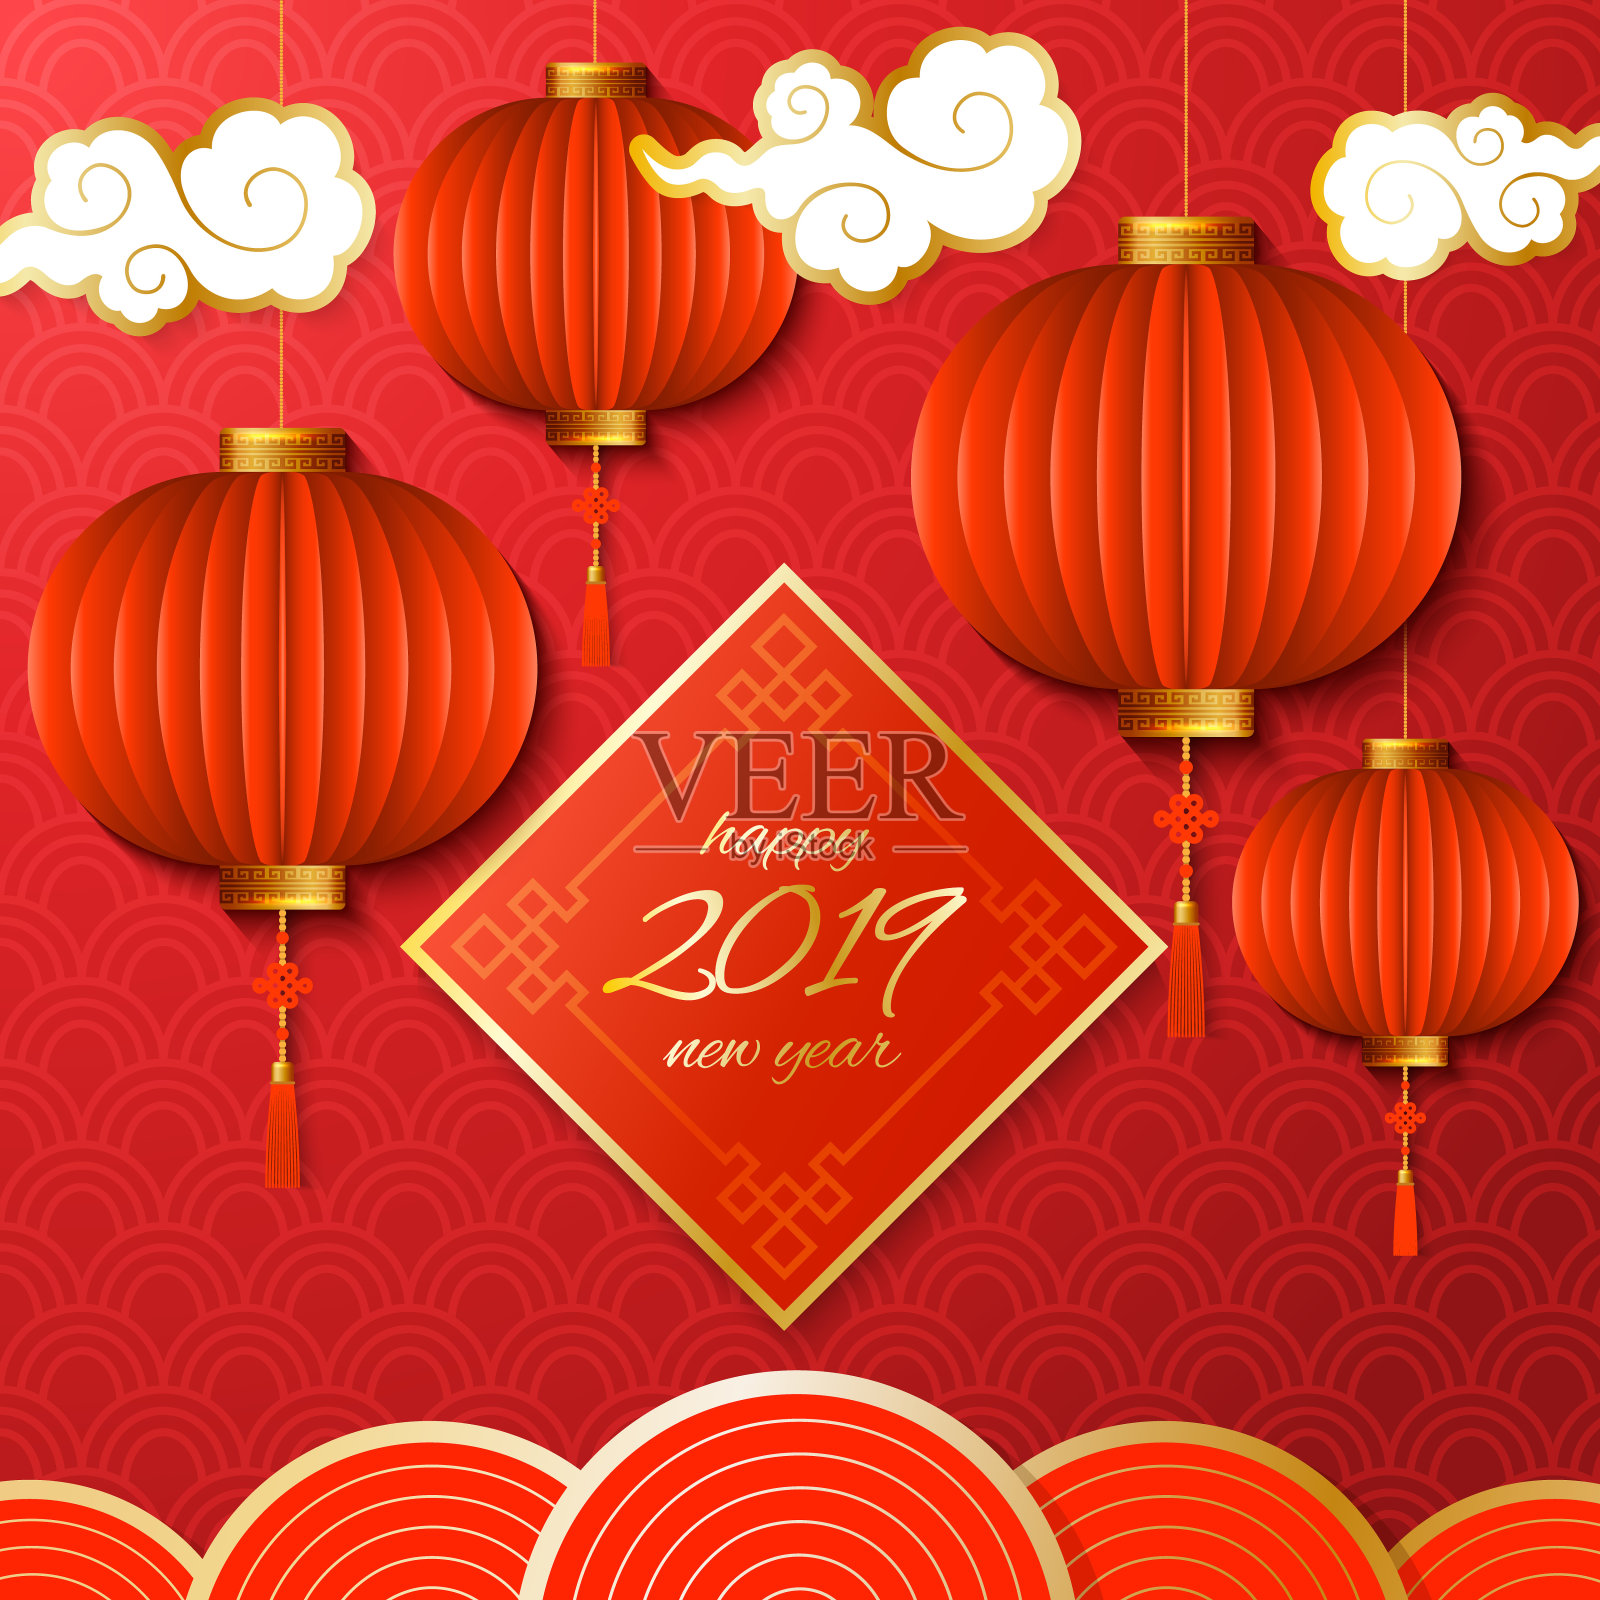 中国新年背景插画图片素材